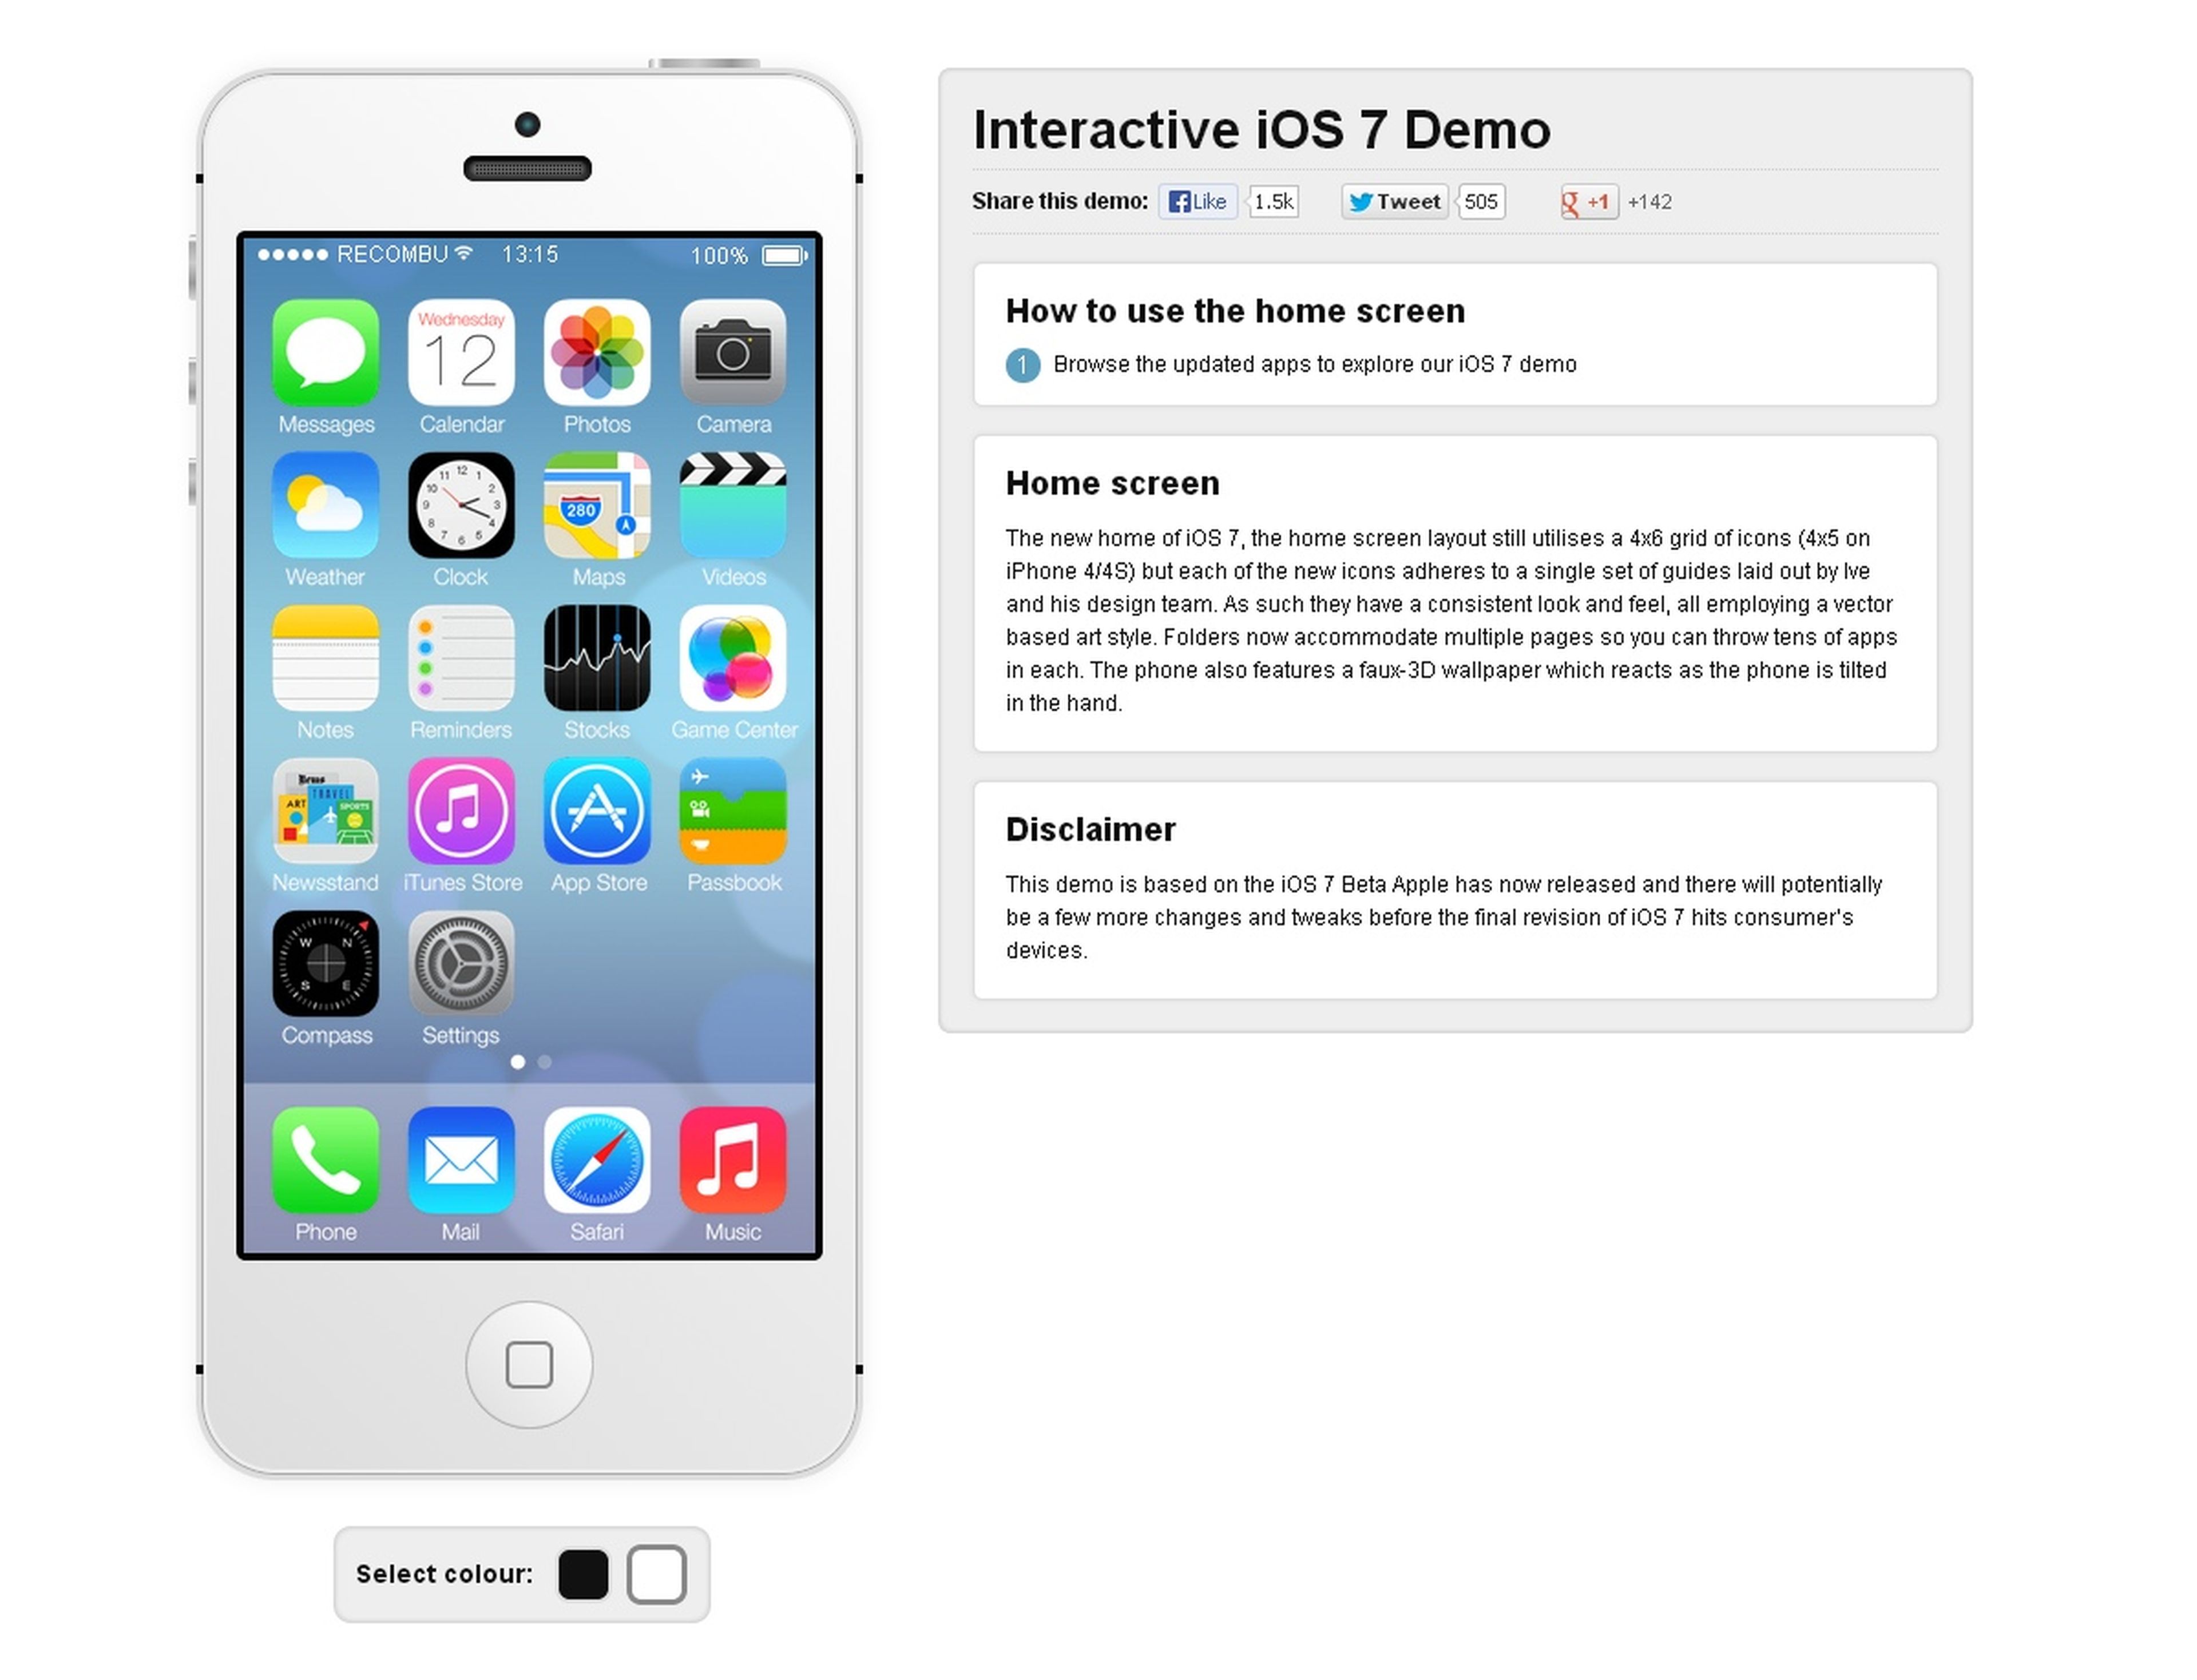 Demo interactiva de iOS 7, el nuevo SO de iPhone